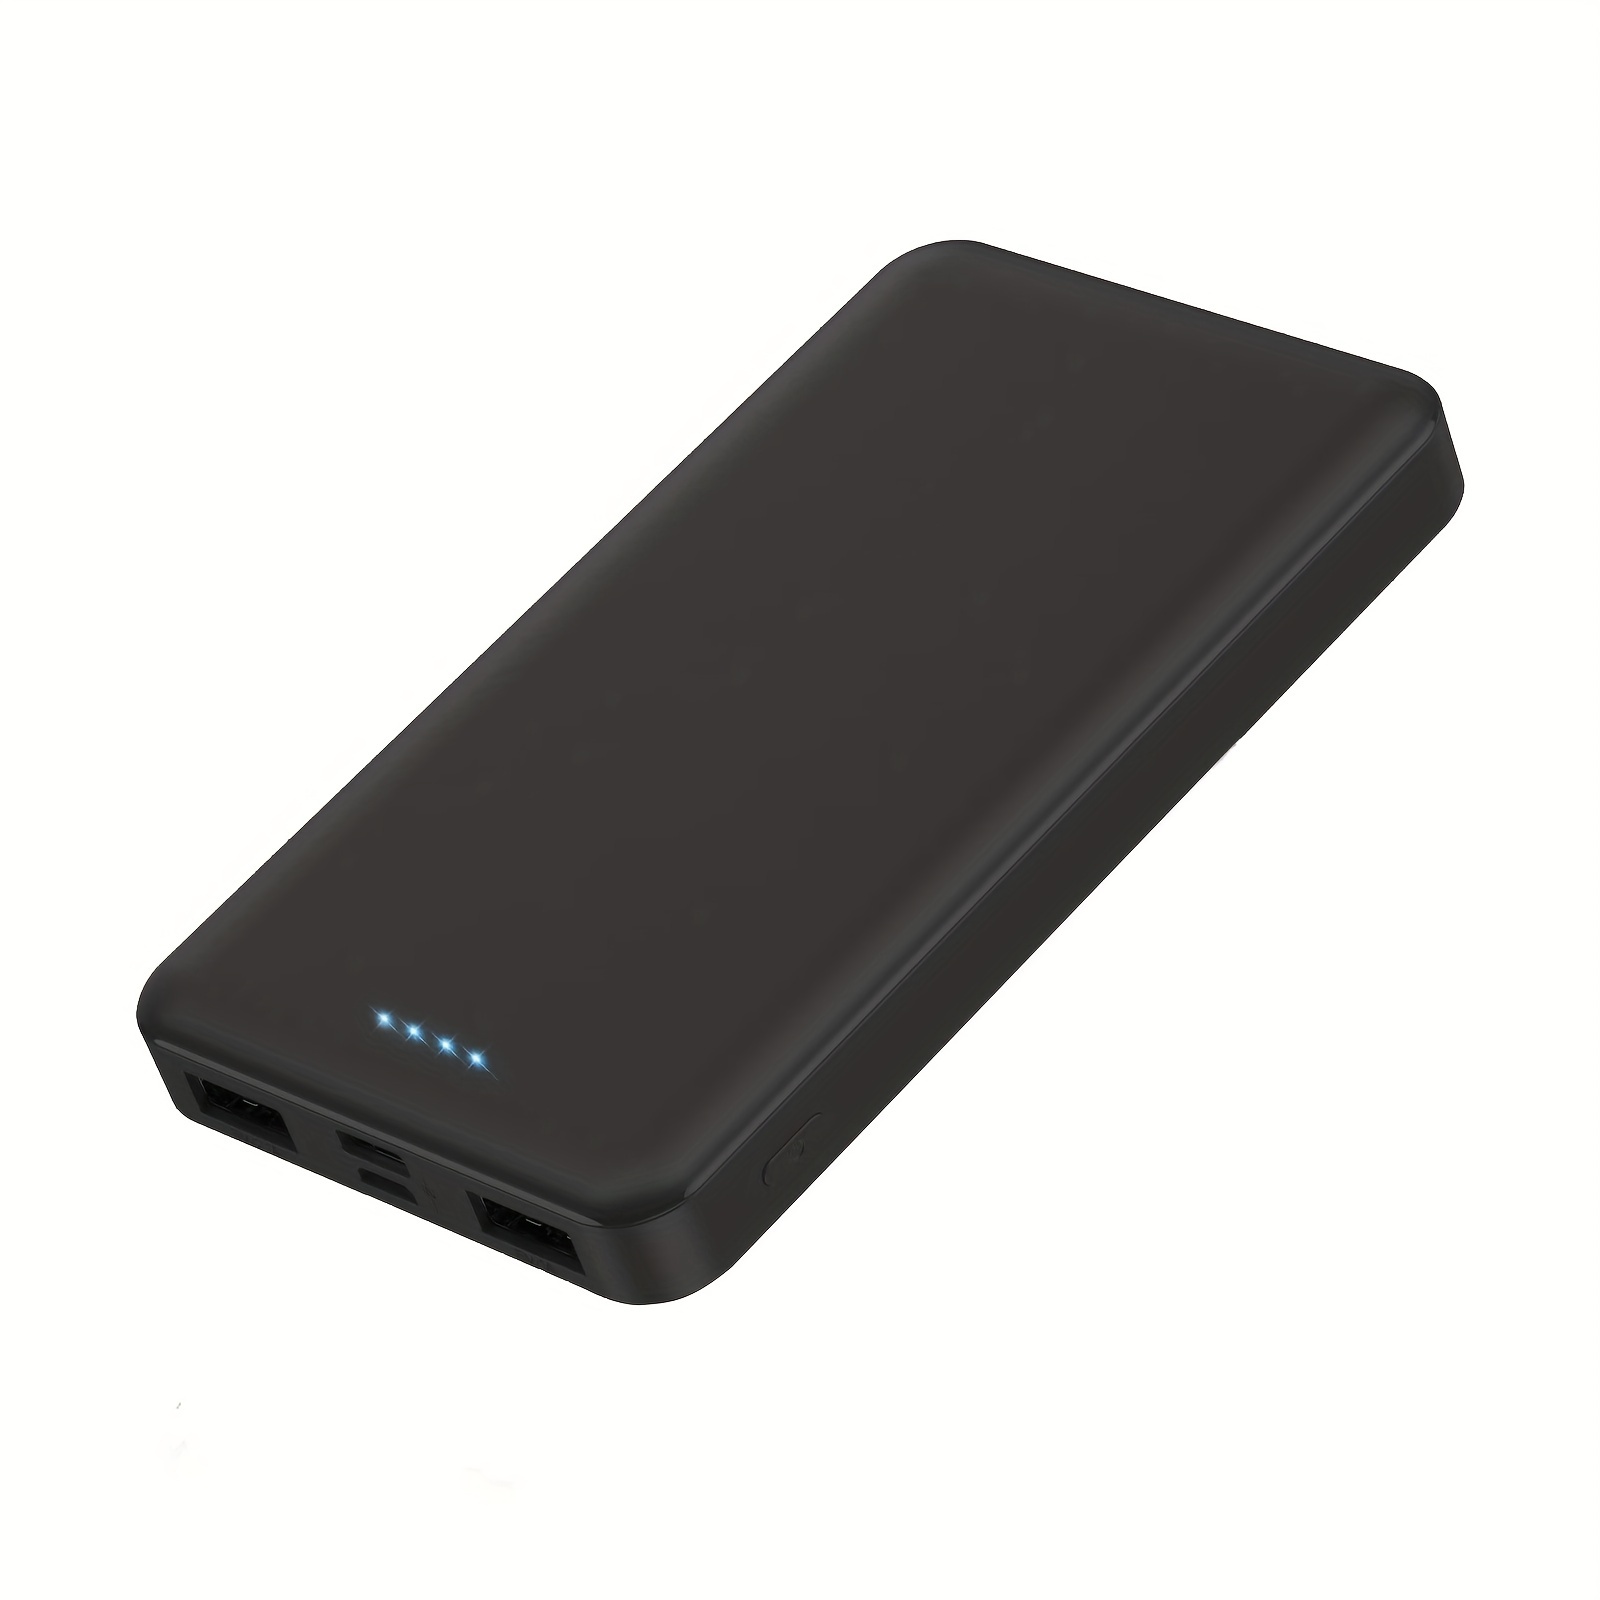  Cargador portátil de batería de 10000 mAh, paquete de 2:  cargador de teléfono portátil ultra delgado con entrada USB C y 2 salidas  de carga de respaldo de carga externa compatible